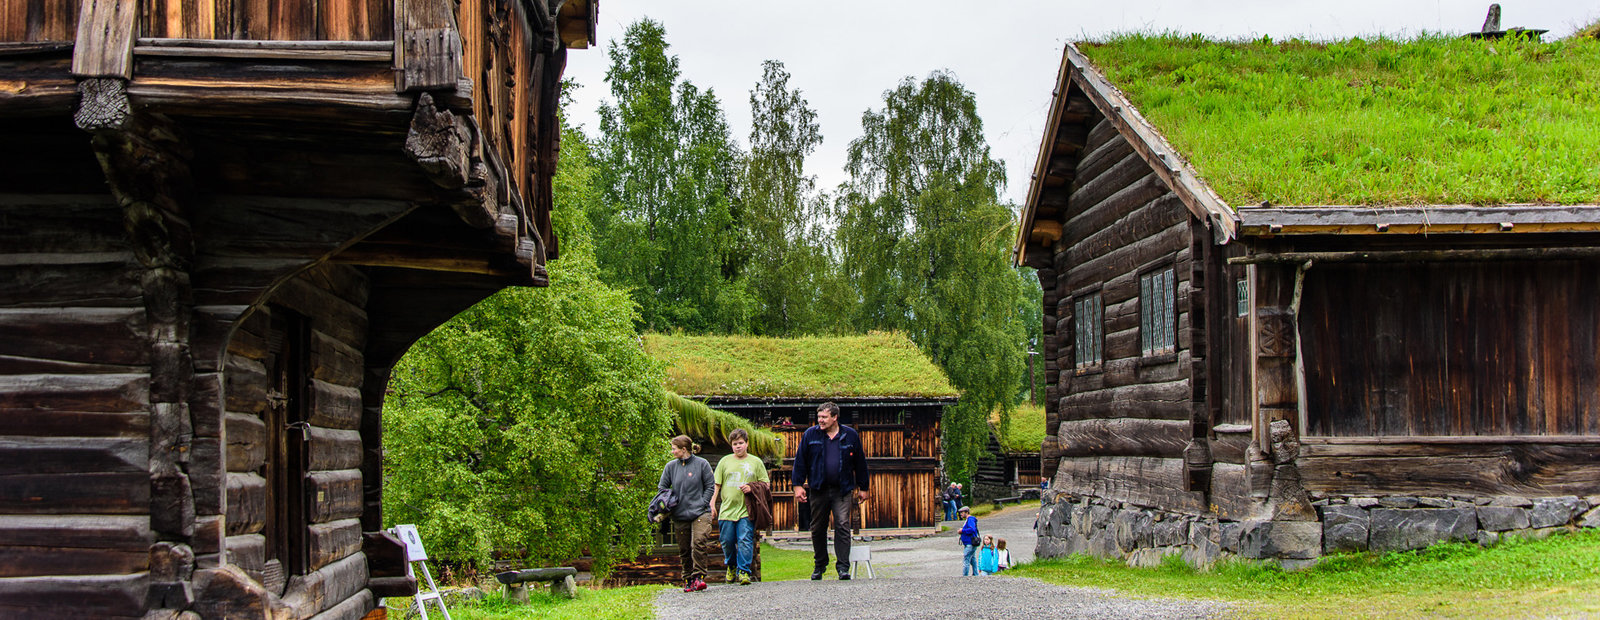  Folk går på grusvei og titter på gamle tømmerhus på friluftsmuseet Maihaugen i Lillehammer. 